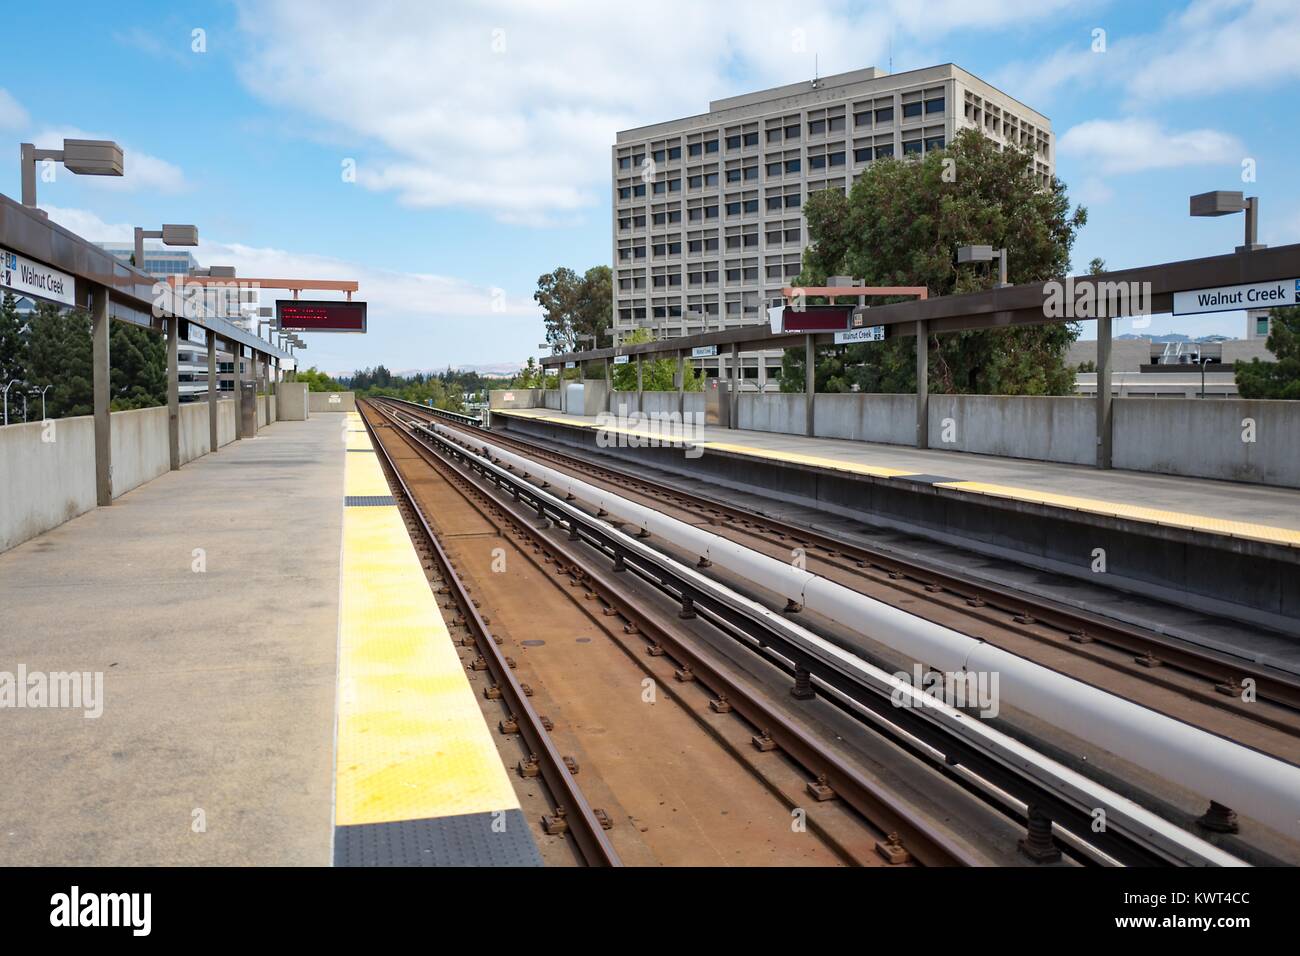 Visualizza in basso la piattaforma e le vie, con elettrificata di terza rotaia visibile, con nessuna delle persone presenti al Walnut Creek, California stazione della Bay Area Rapid Transit (BART) Sistema ferroviario leggero, 13 settembre 2017. Foto Stock